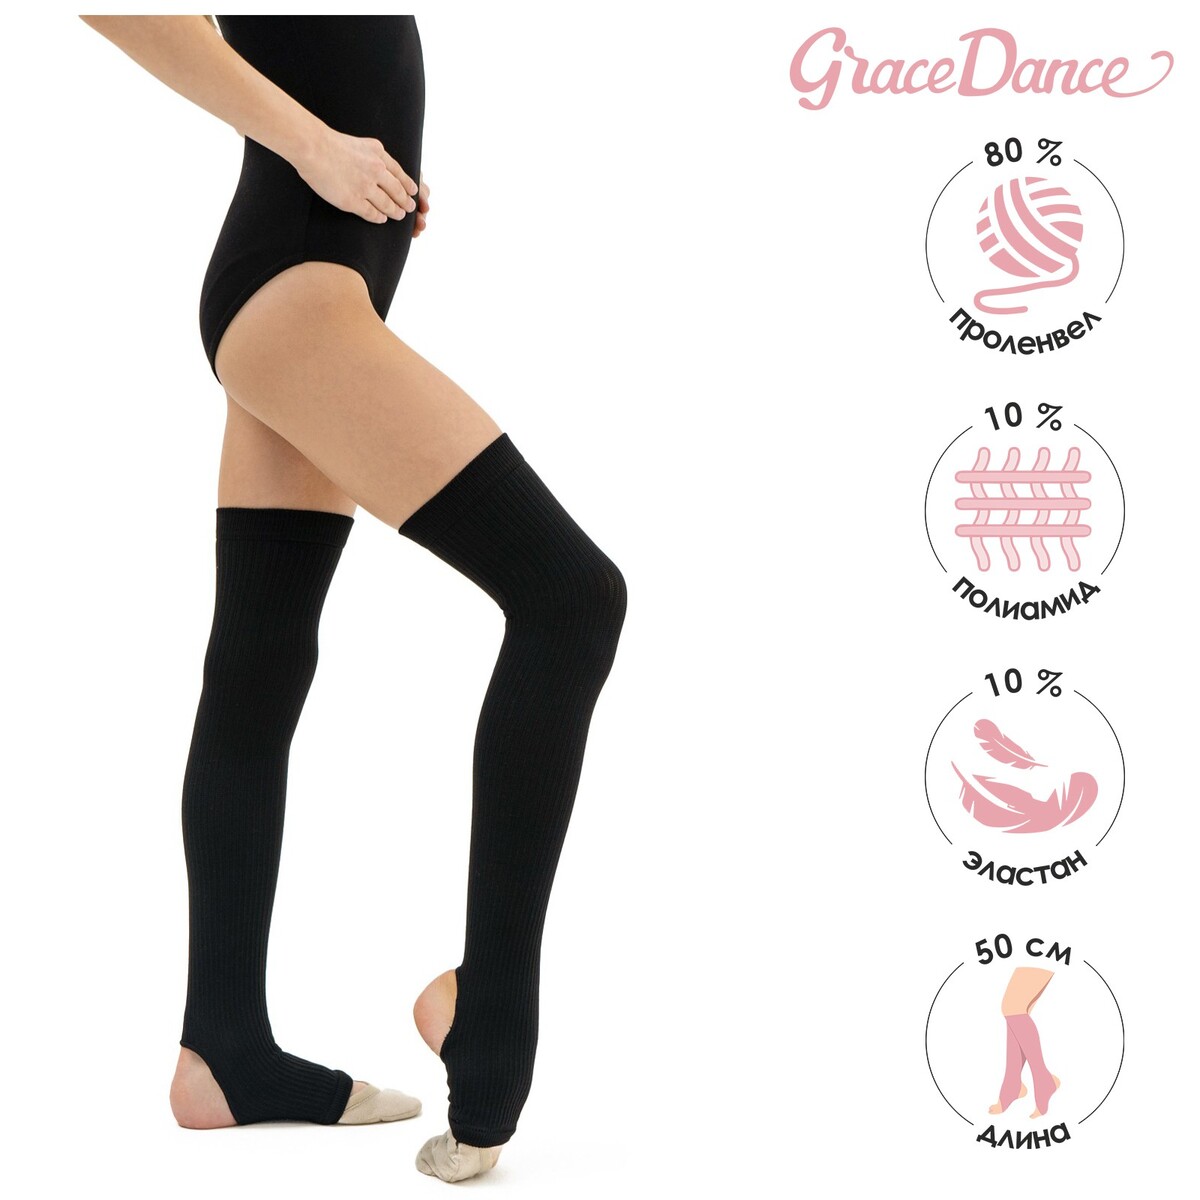 Гетры для танцев grace dance №4, длина 50 см, цвет черный гетры для танцев grace dance 5 длина 30 см бирюзовый